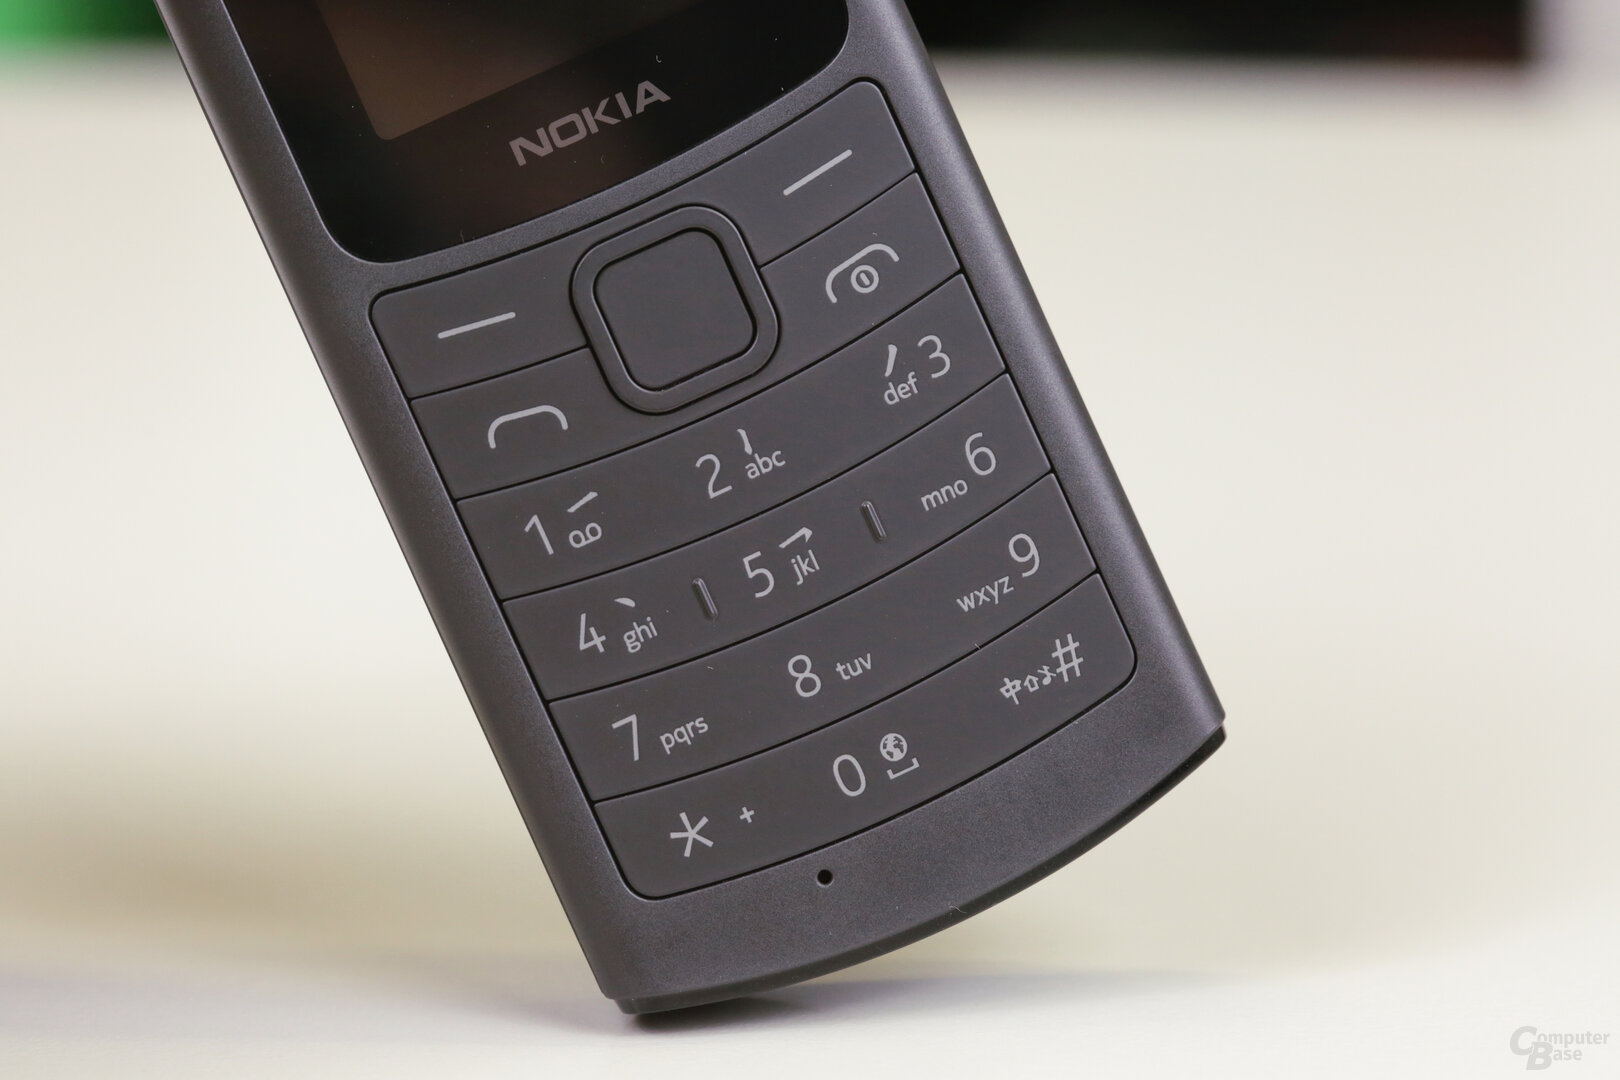 Tastentelefon mit T9 für SMS